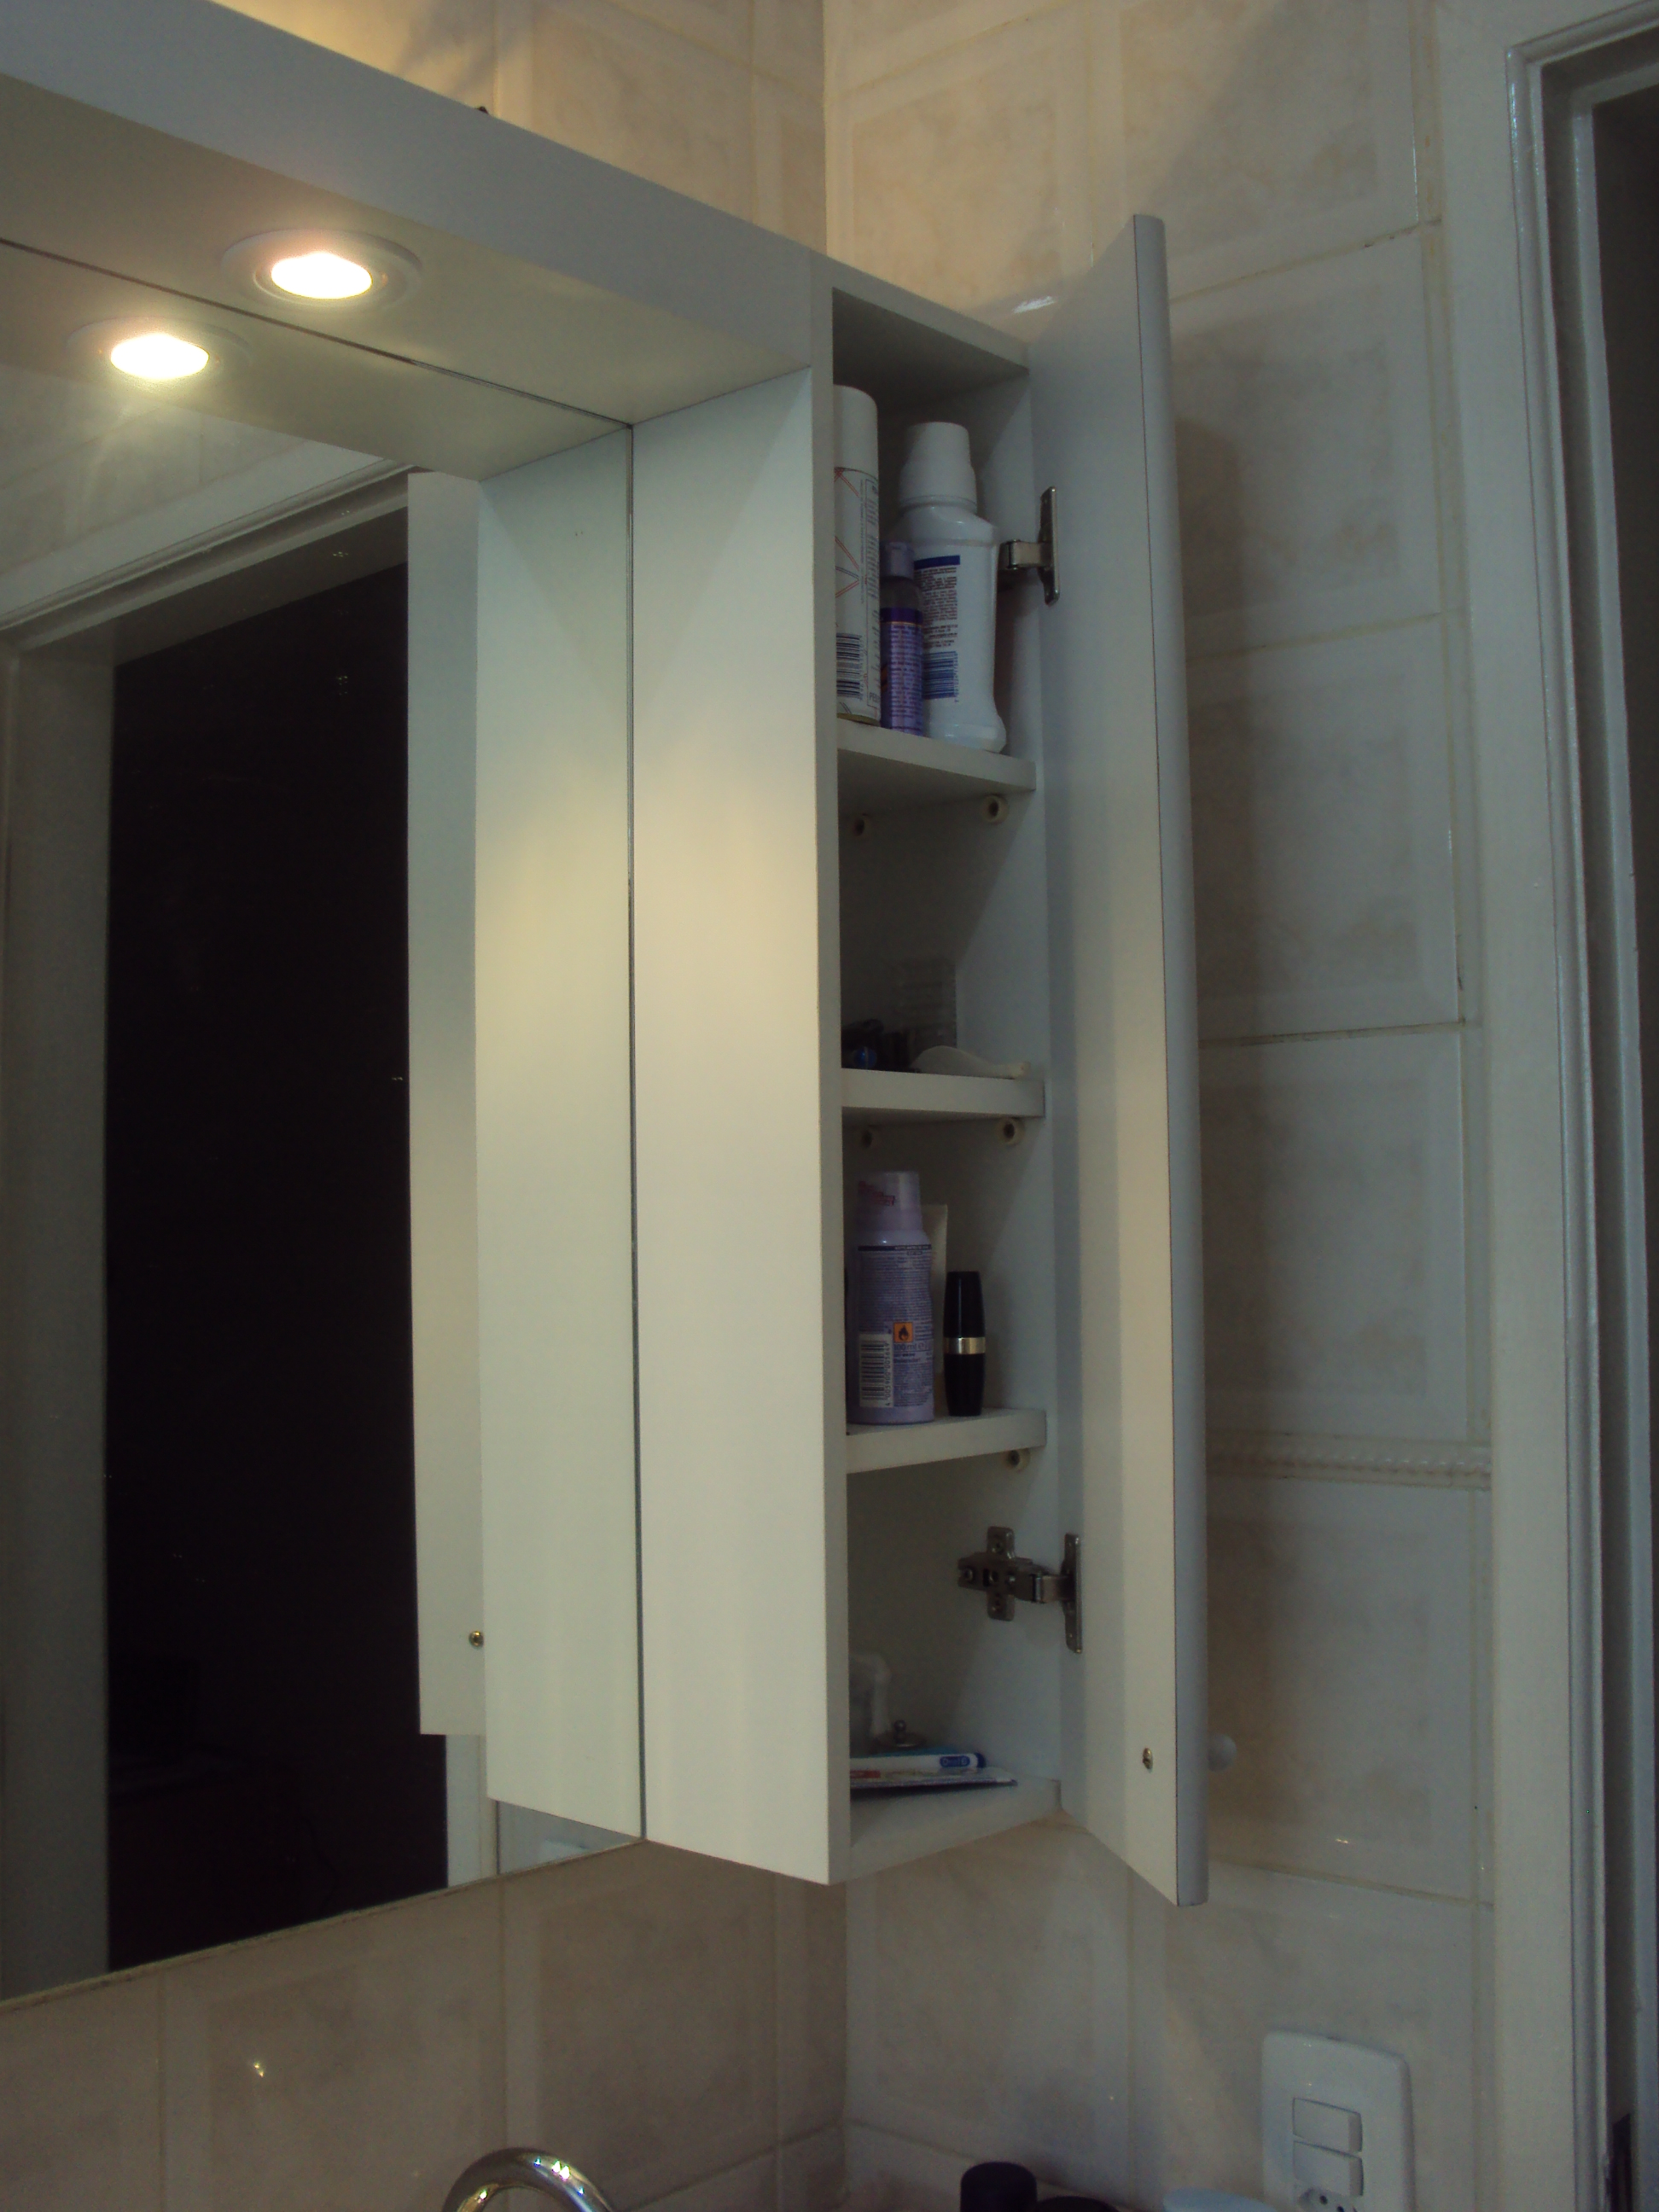 Amarinho para banheiro com espelho, uma portinha com espaço para acomodar seus produtos de higiene, iluminado.